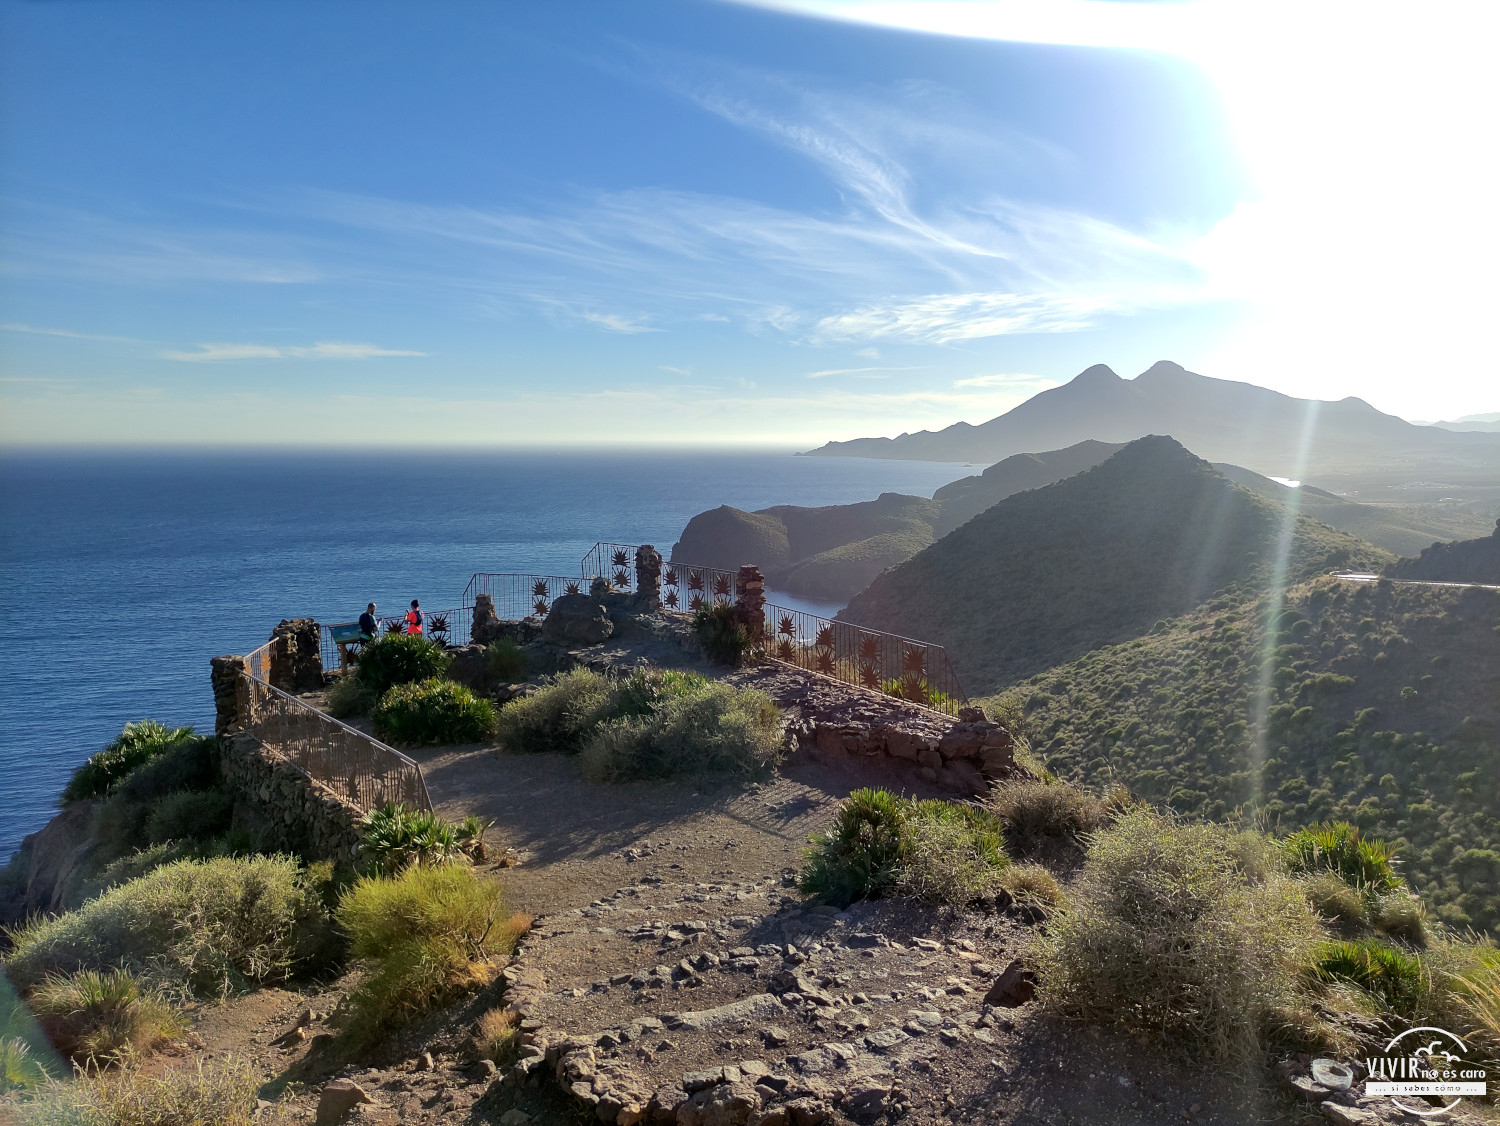 Mirador de la Amatista en el Cabo de Gata (Almería)